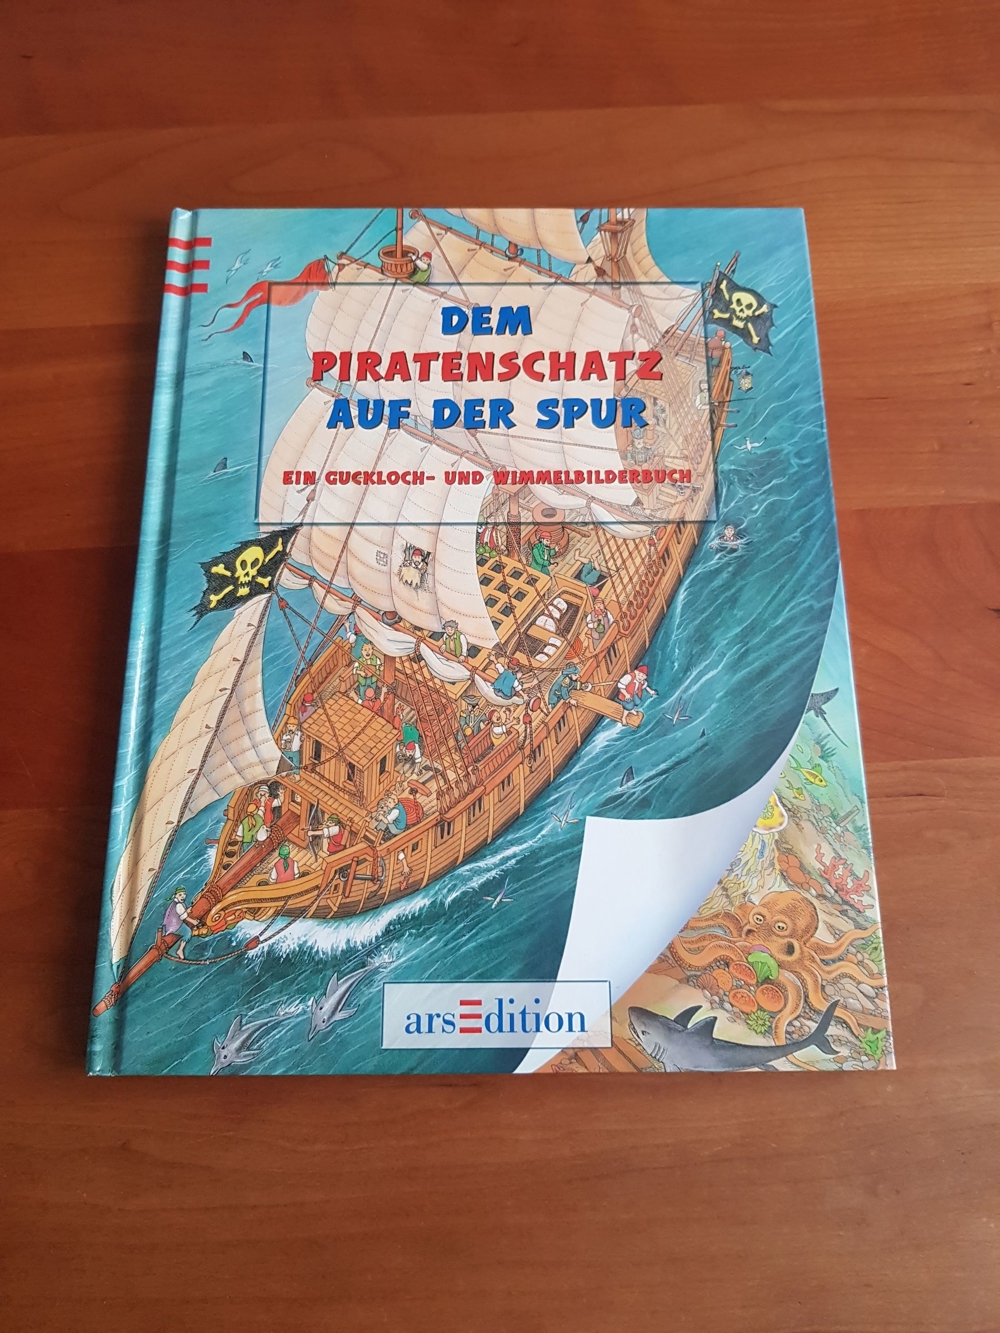 Wimmel-und Gucklochkinderbuch "Dem Piratenschatz auf der Spur" von ars edition